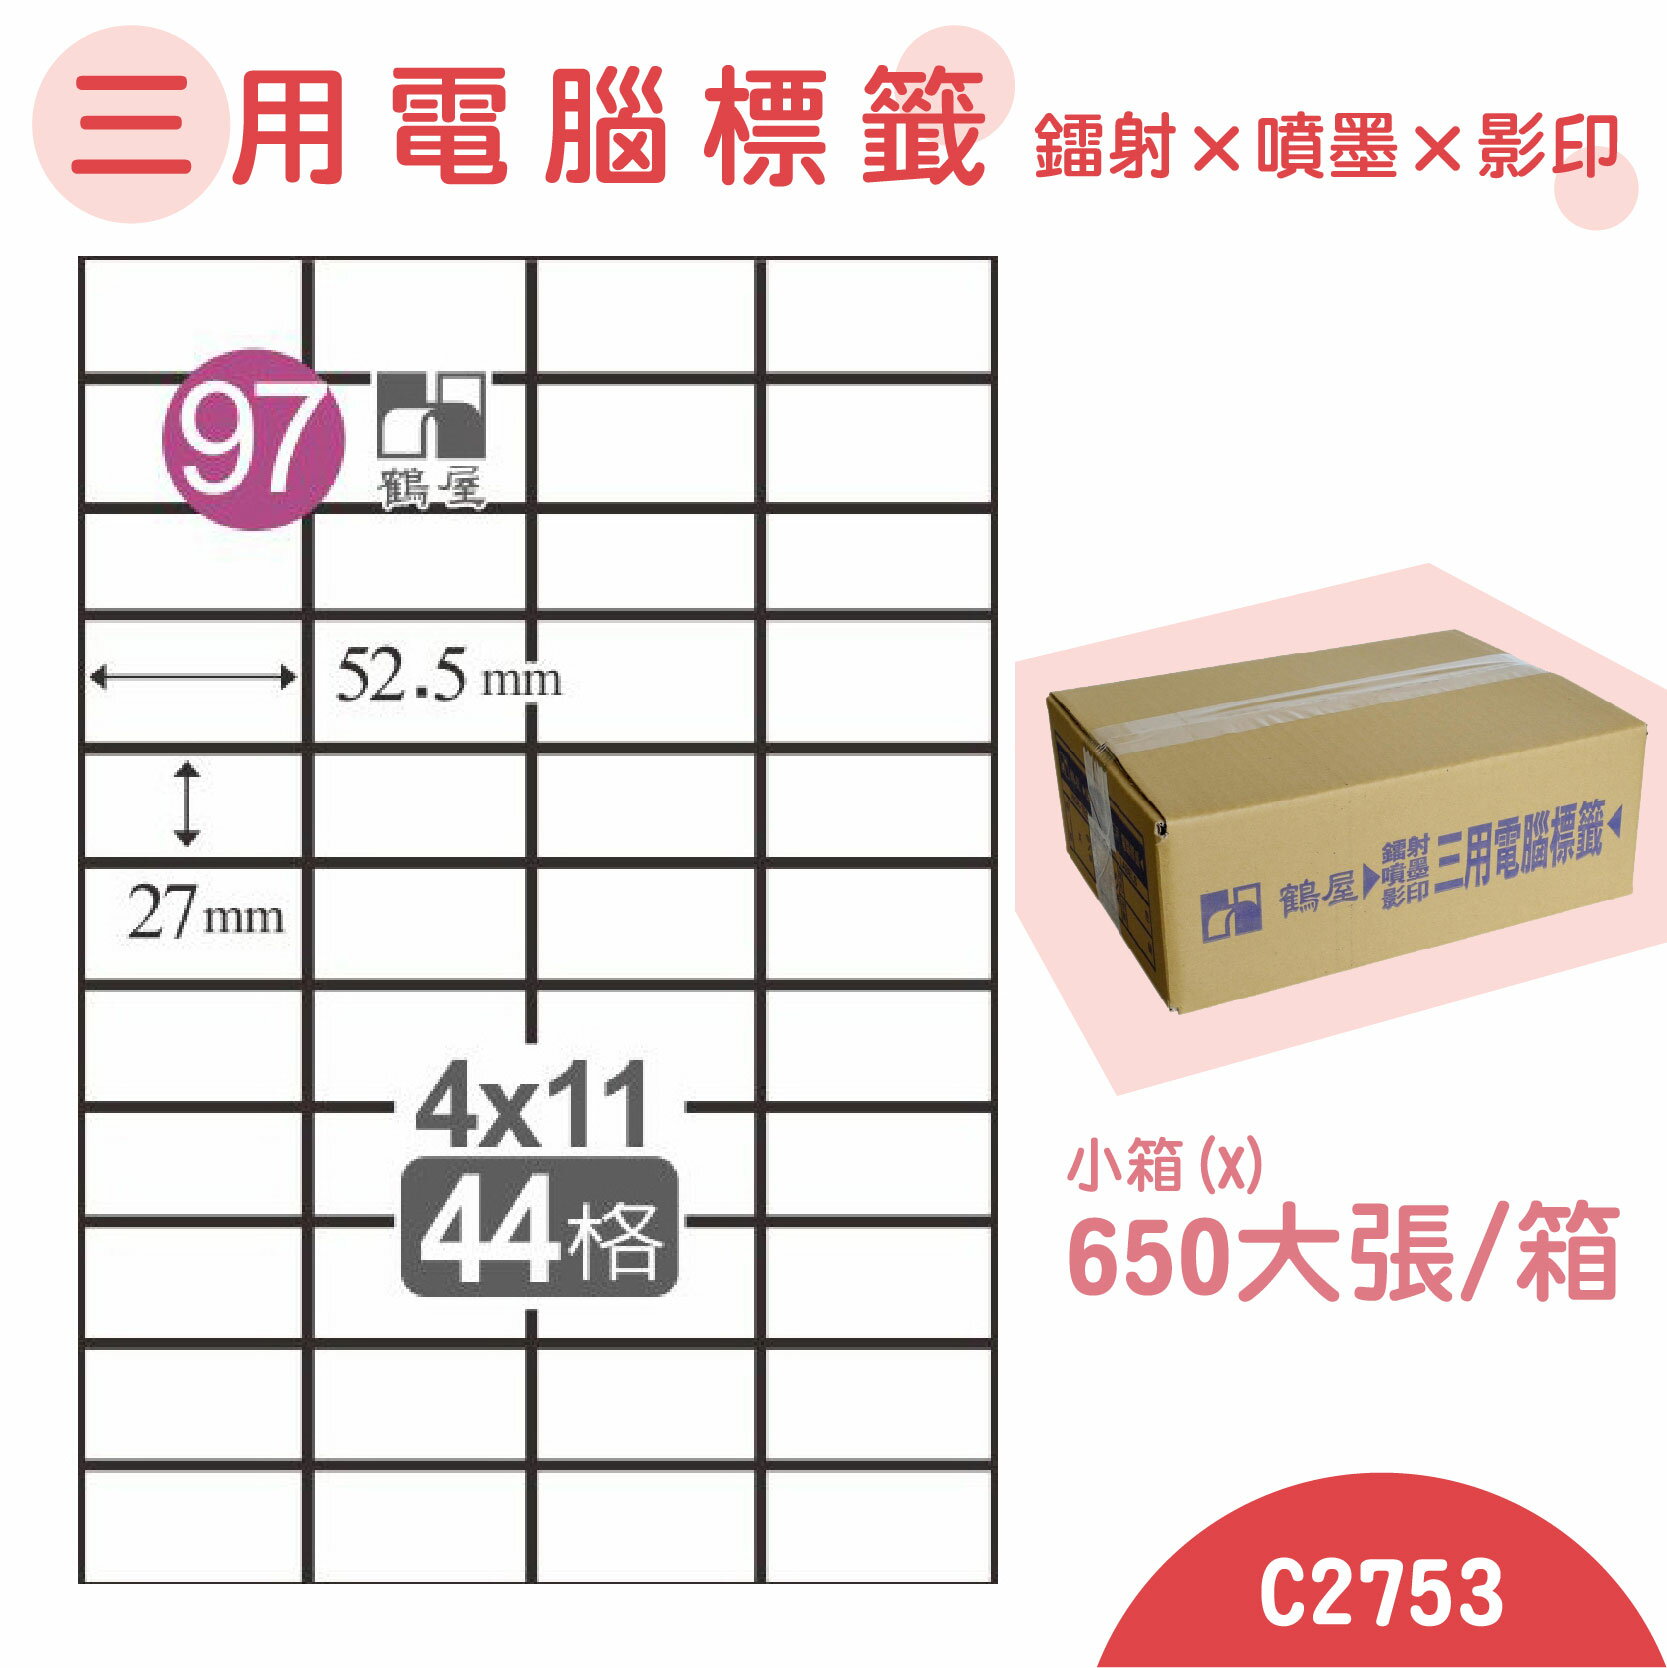 【品質第一】鶴屋 電腦標籤紙 白 C2753 44格 650大張/小箱 影印 雷射 噴墨 三用 標籤 出貨 貼紙